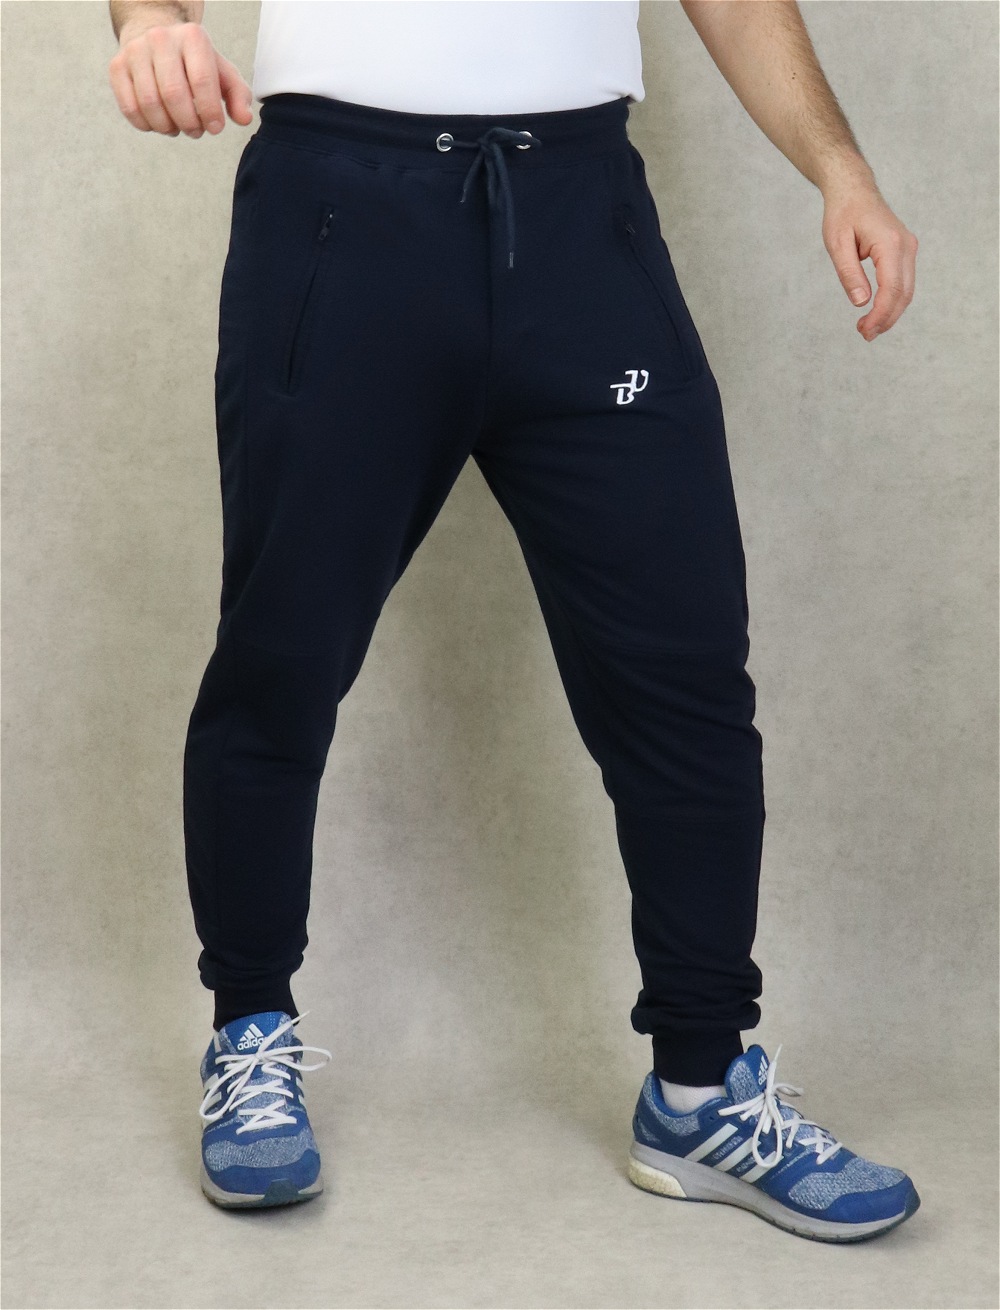 Pantalon Jogging léger homme grandes poches zip - Marque Best